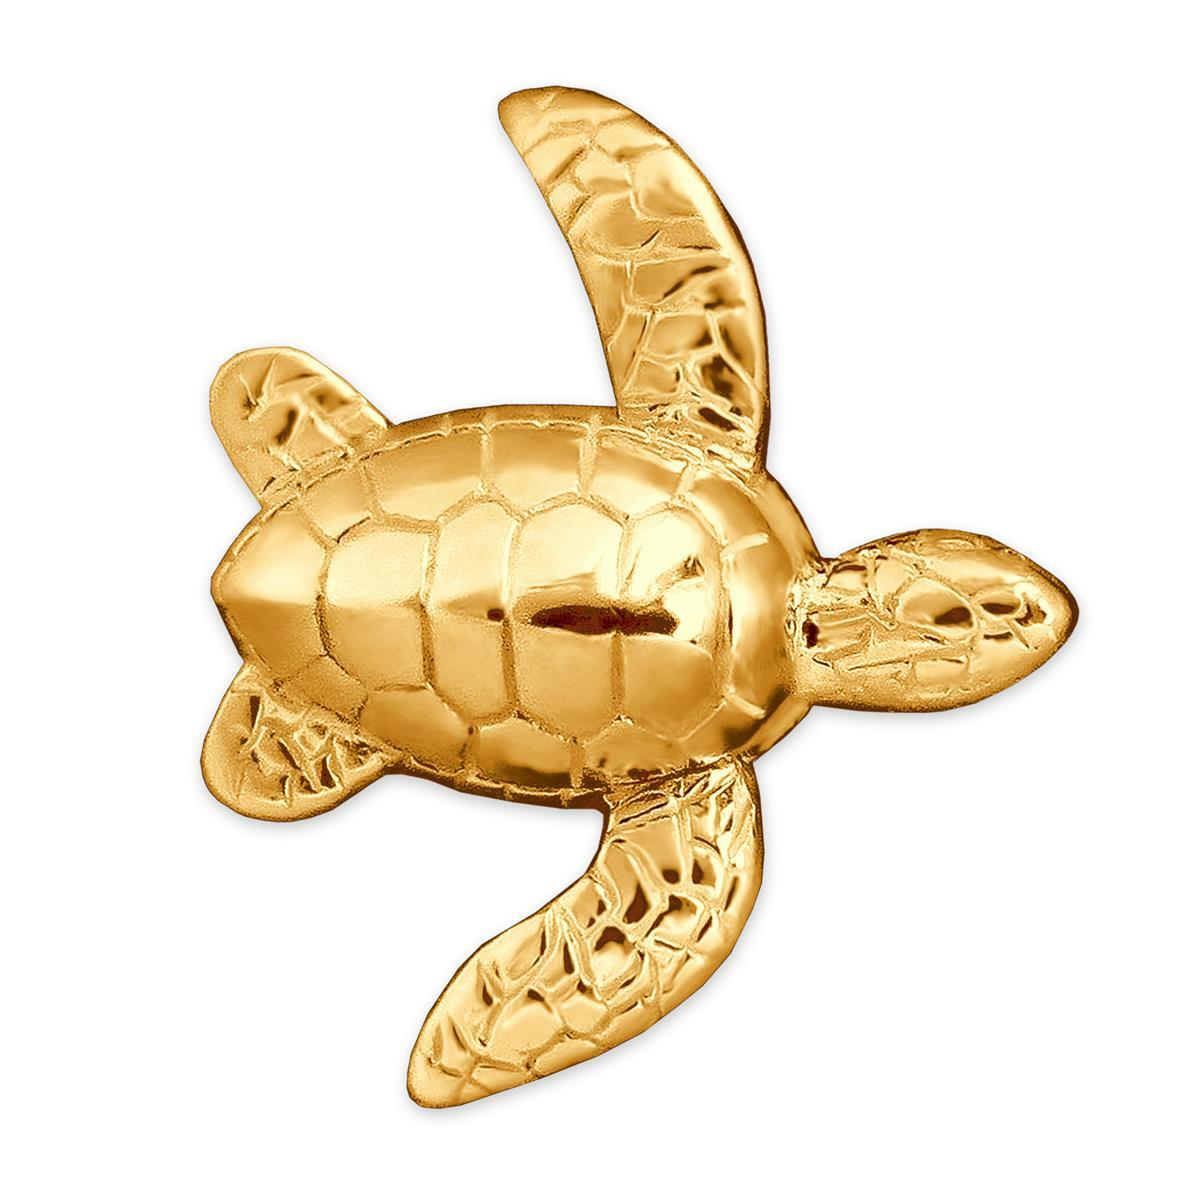 Goldener Anhänger Schildkröte 25 mm vollplastisch mit beweglichen Flossen seitlich hängend Gold-plattiert STERLING SILBER 925